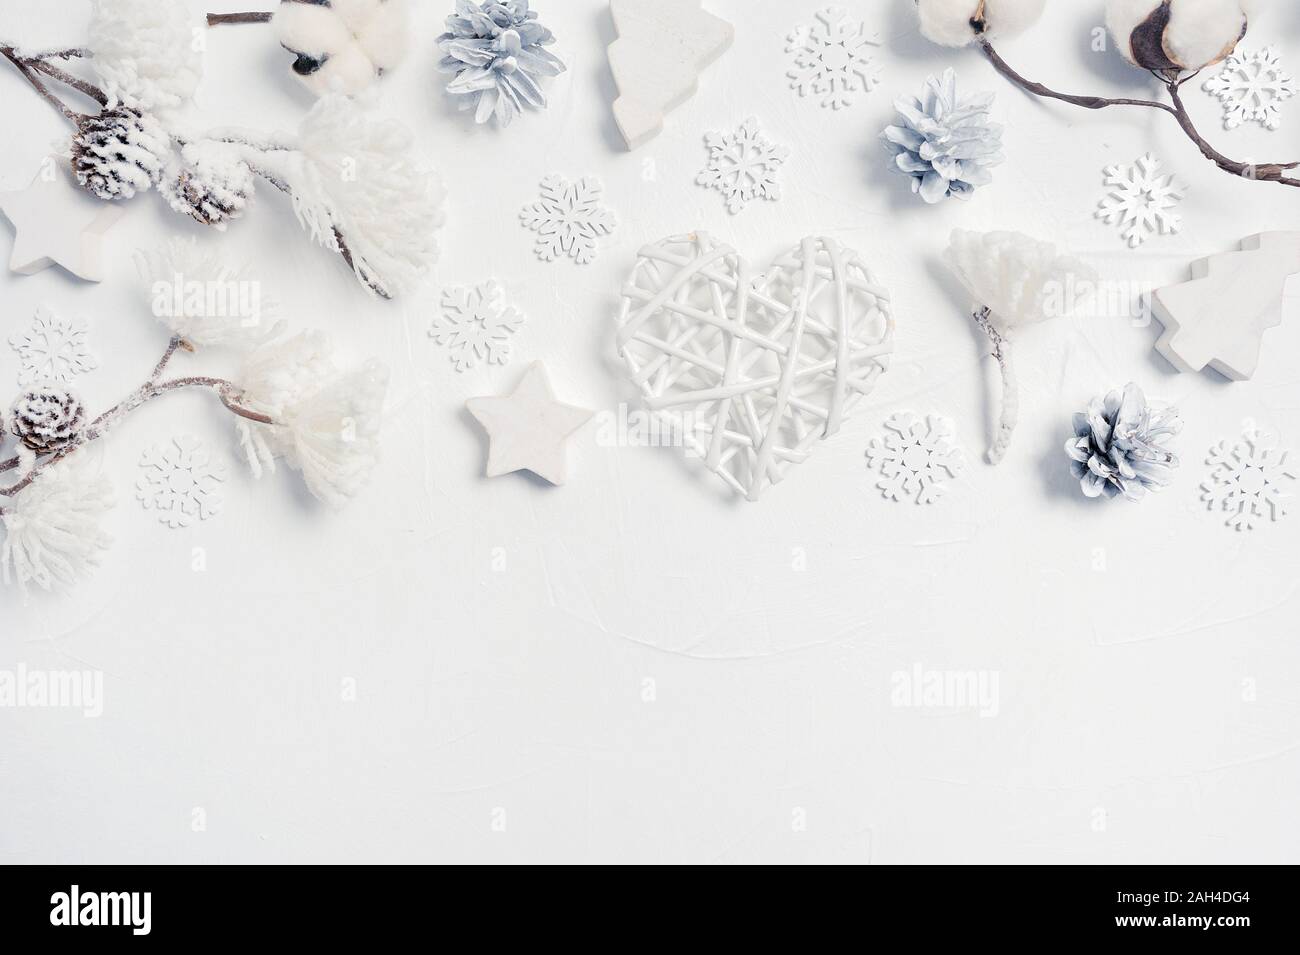 Éléments de conception de cartes de vœux de Noël avec boîte-cadeau de Noël, des cônes, des fleurs de coton, du cœur, des flocons de neige avec place pour votre texte. Décorations sur un livre blanc Banque D'Images